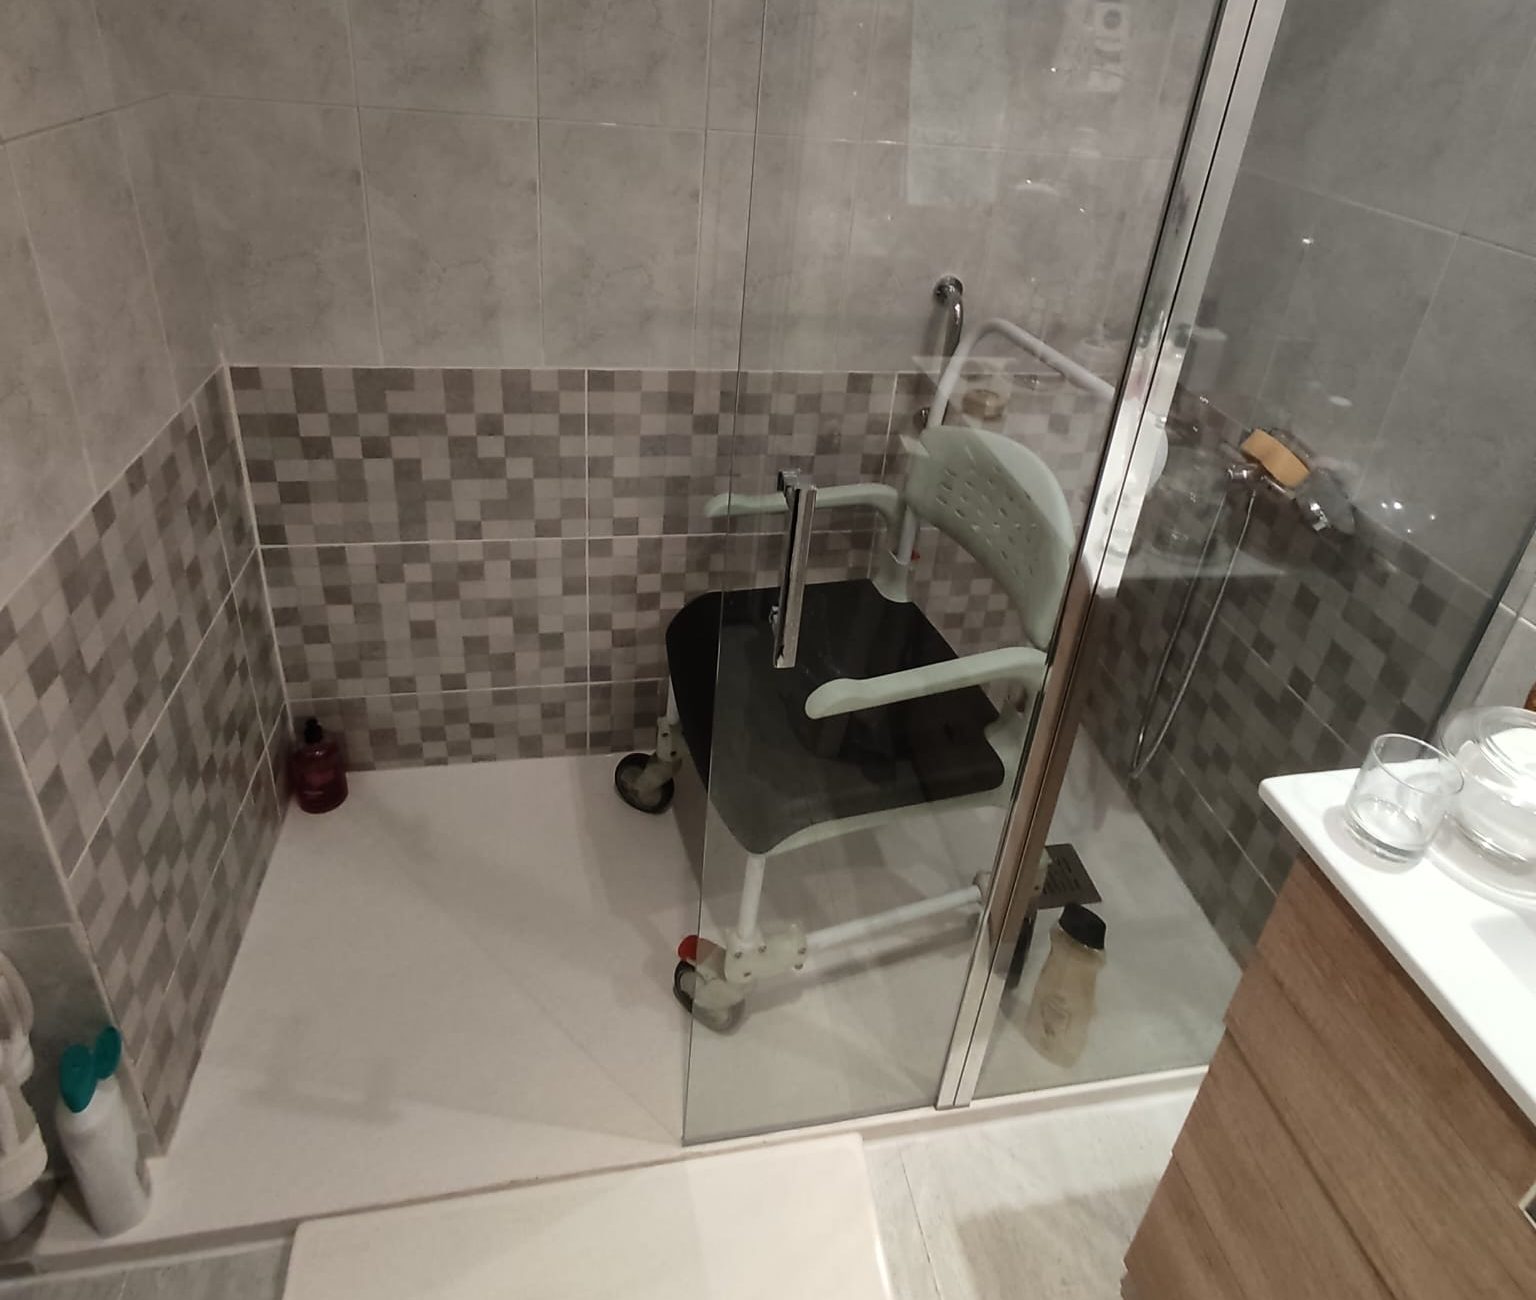 silla para ducha dentro de una zona de ducha adaptada a una persona con movilidad reducida